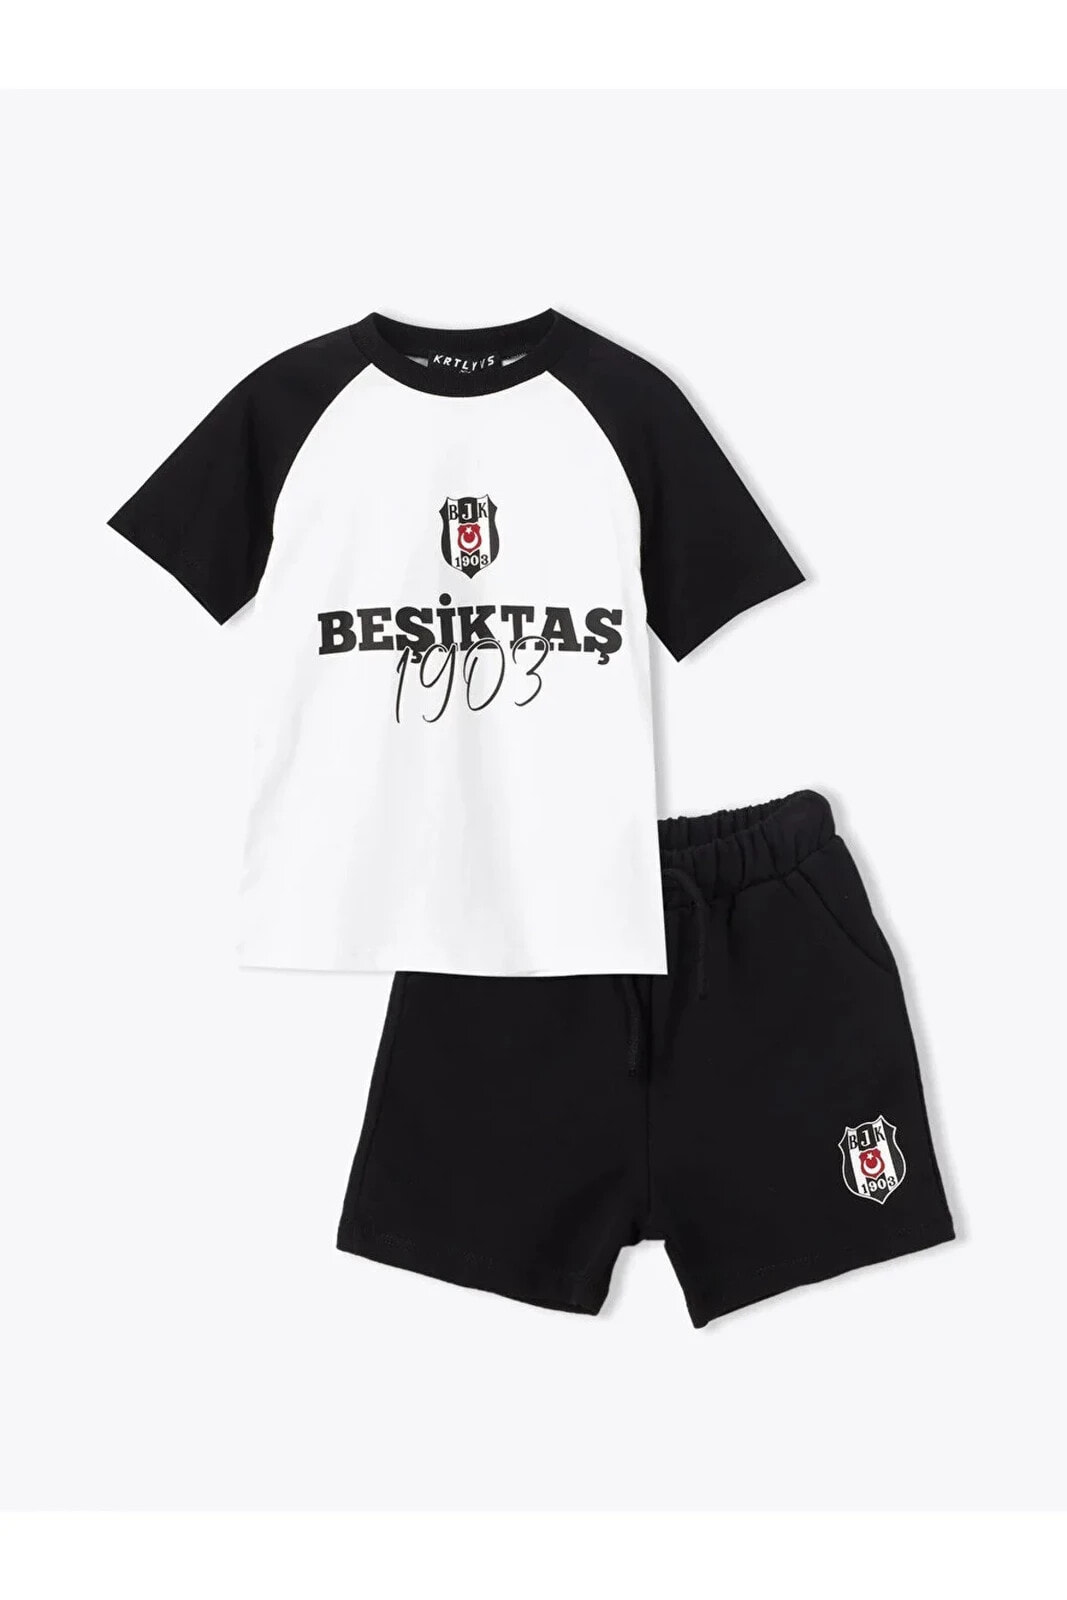 baby Bisiklet Yaka Beşiktaş Baskılı Erkek Bebek Tişört Ve Şort 2'li Takım